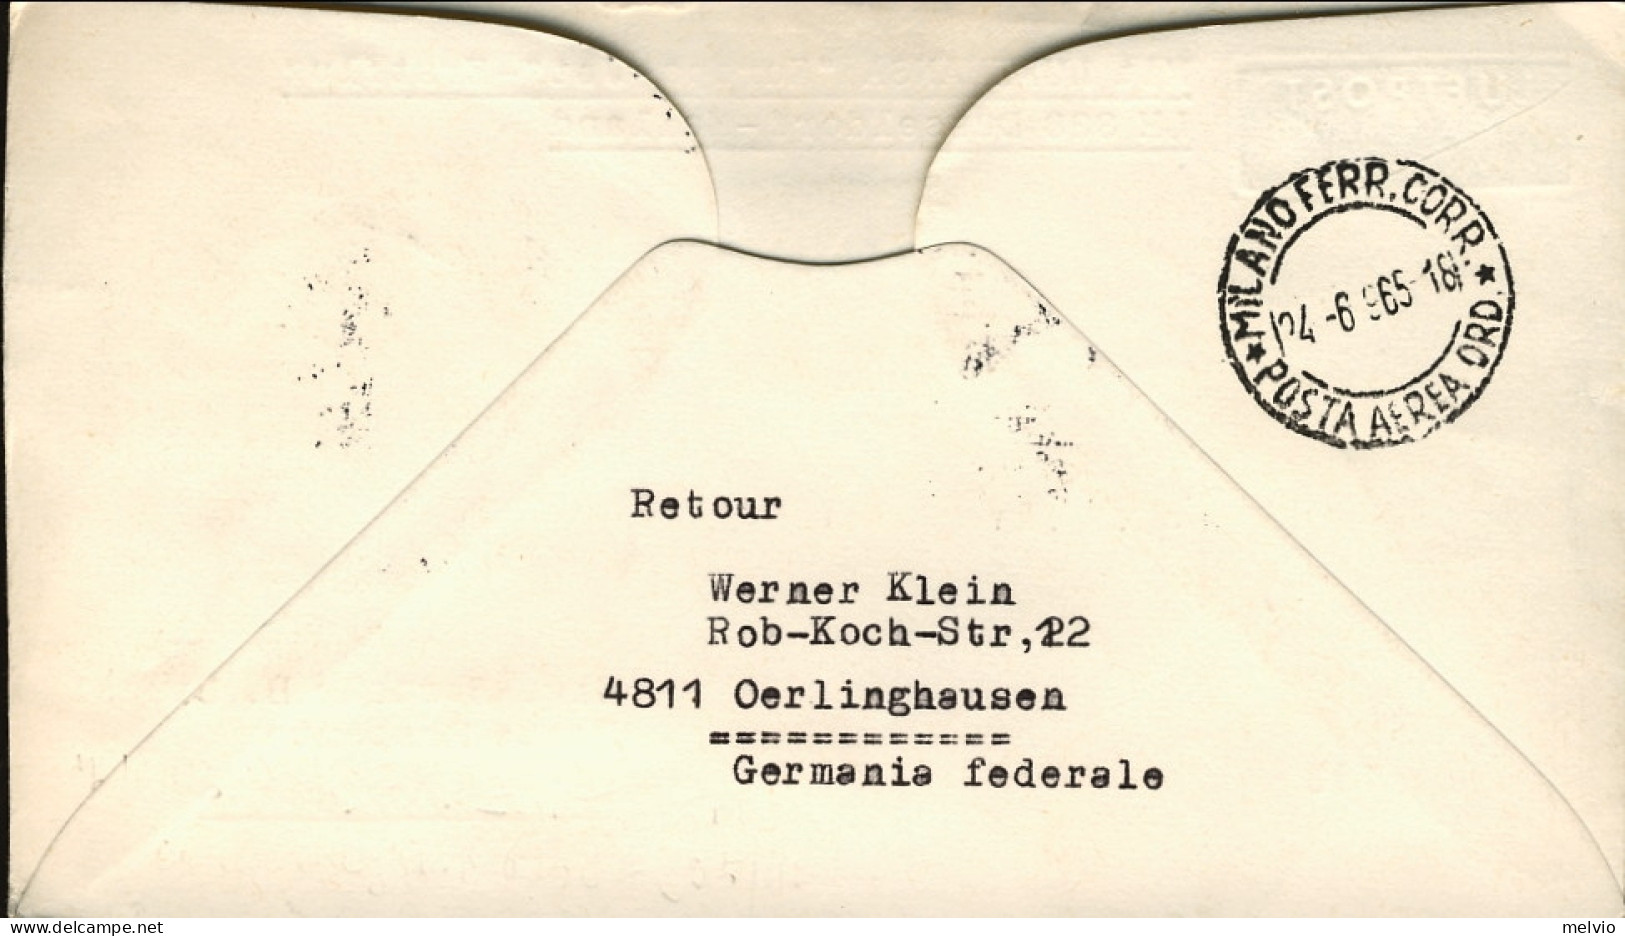 1965-Germania I^volo Lufthansa Dusseldorf-Milano Del 24 Giugno,posta Da Berlino - Lettres & Documents